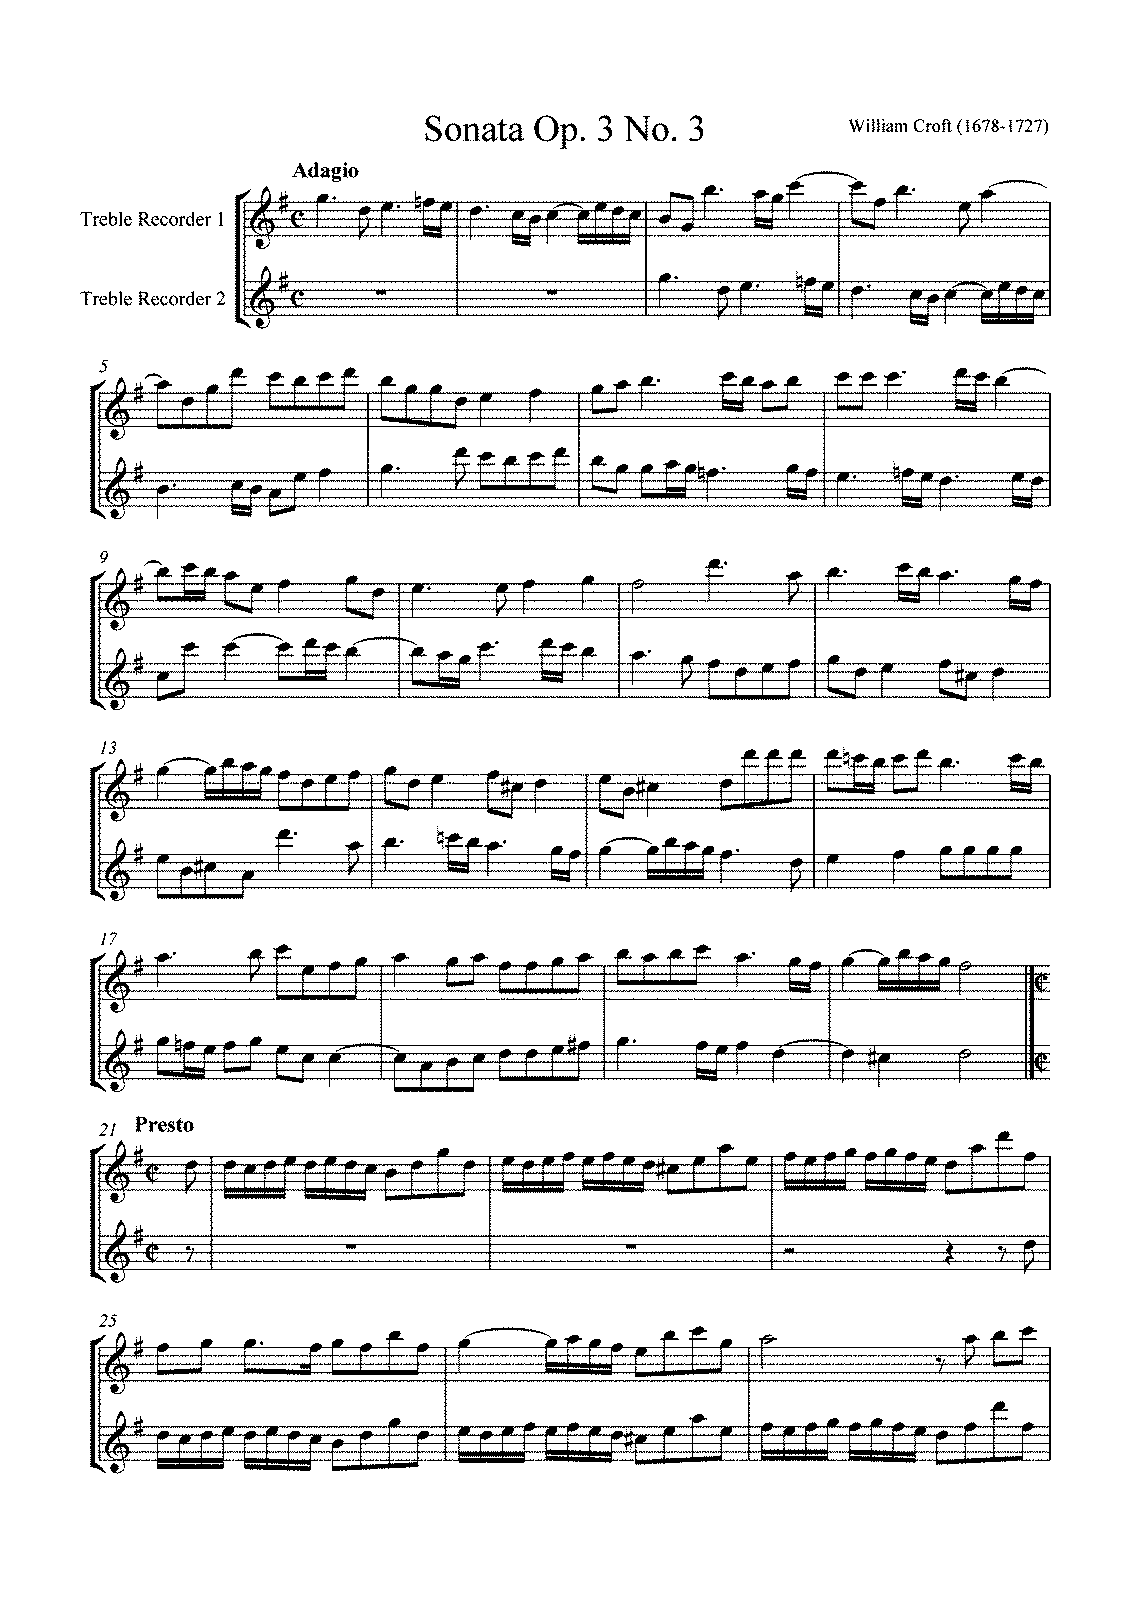 6 Sonatas of Two Parts (Croft, William) - IMSLP